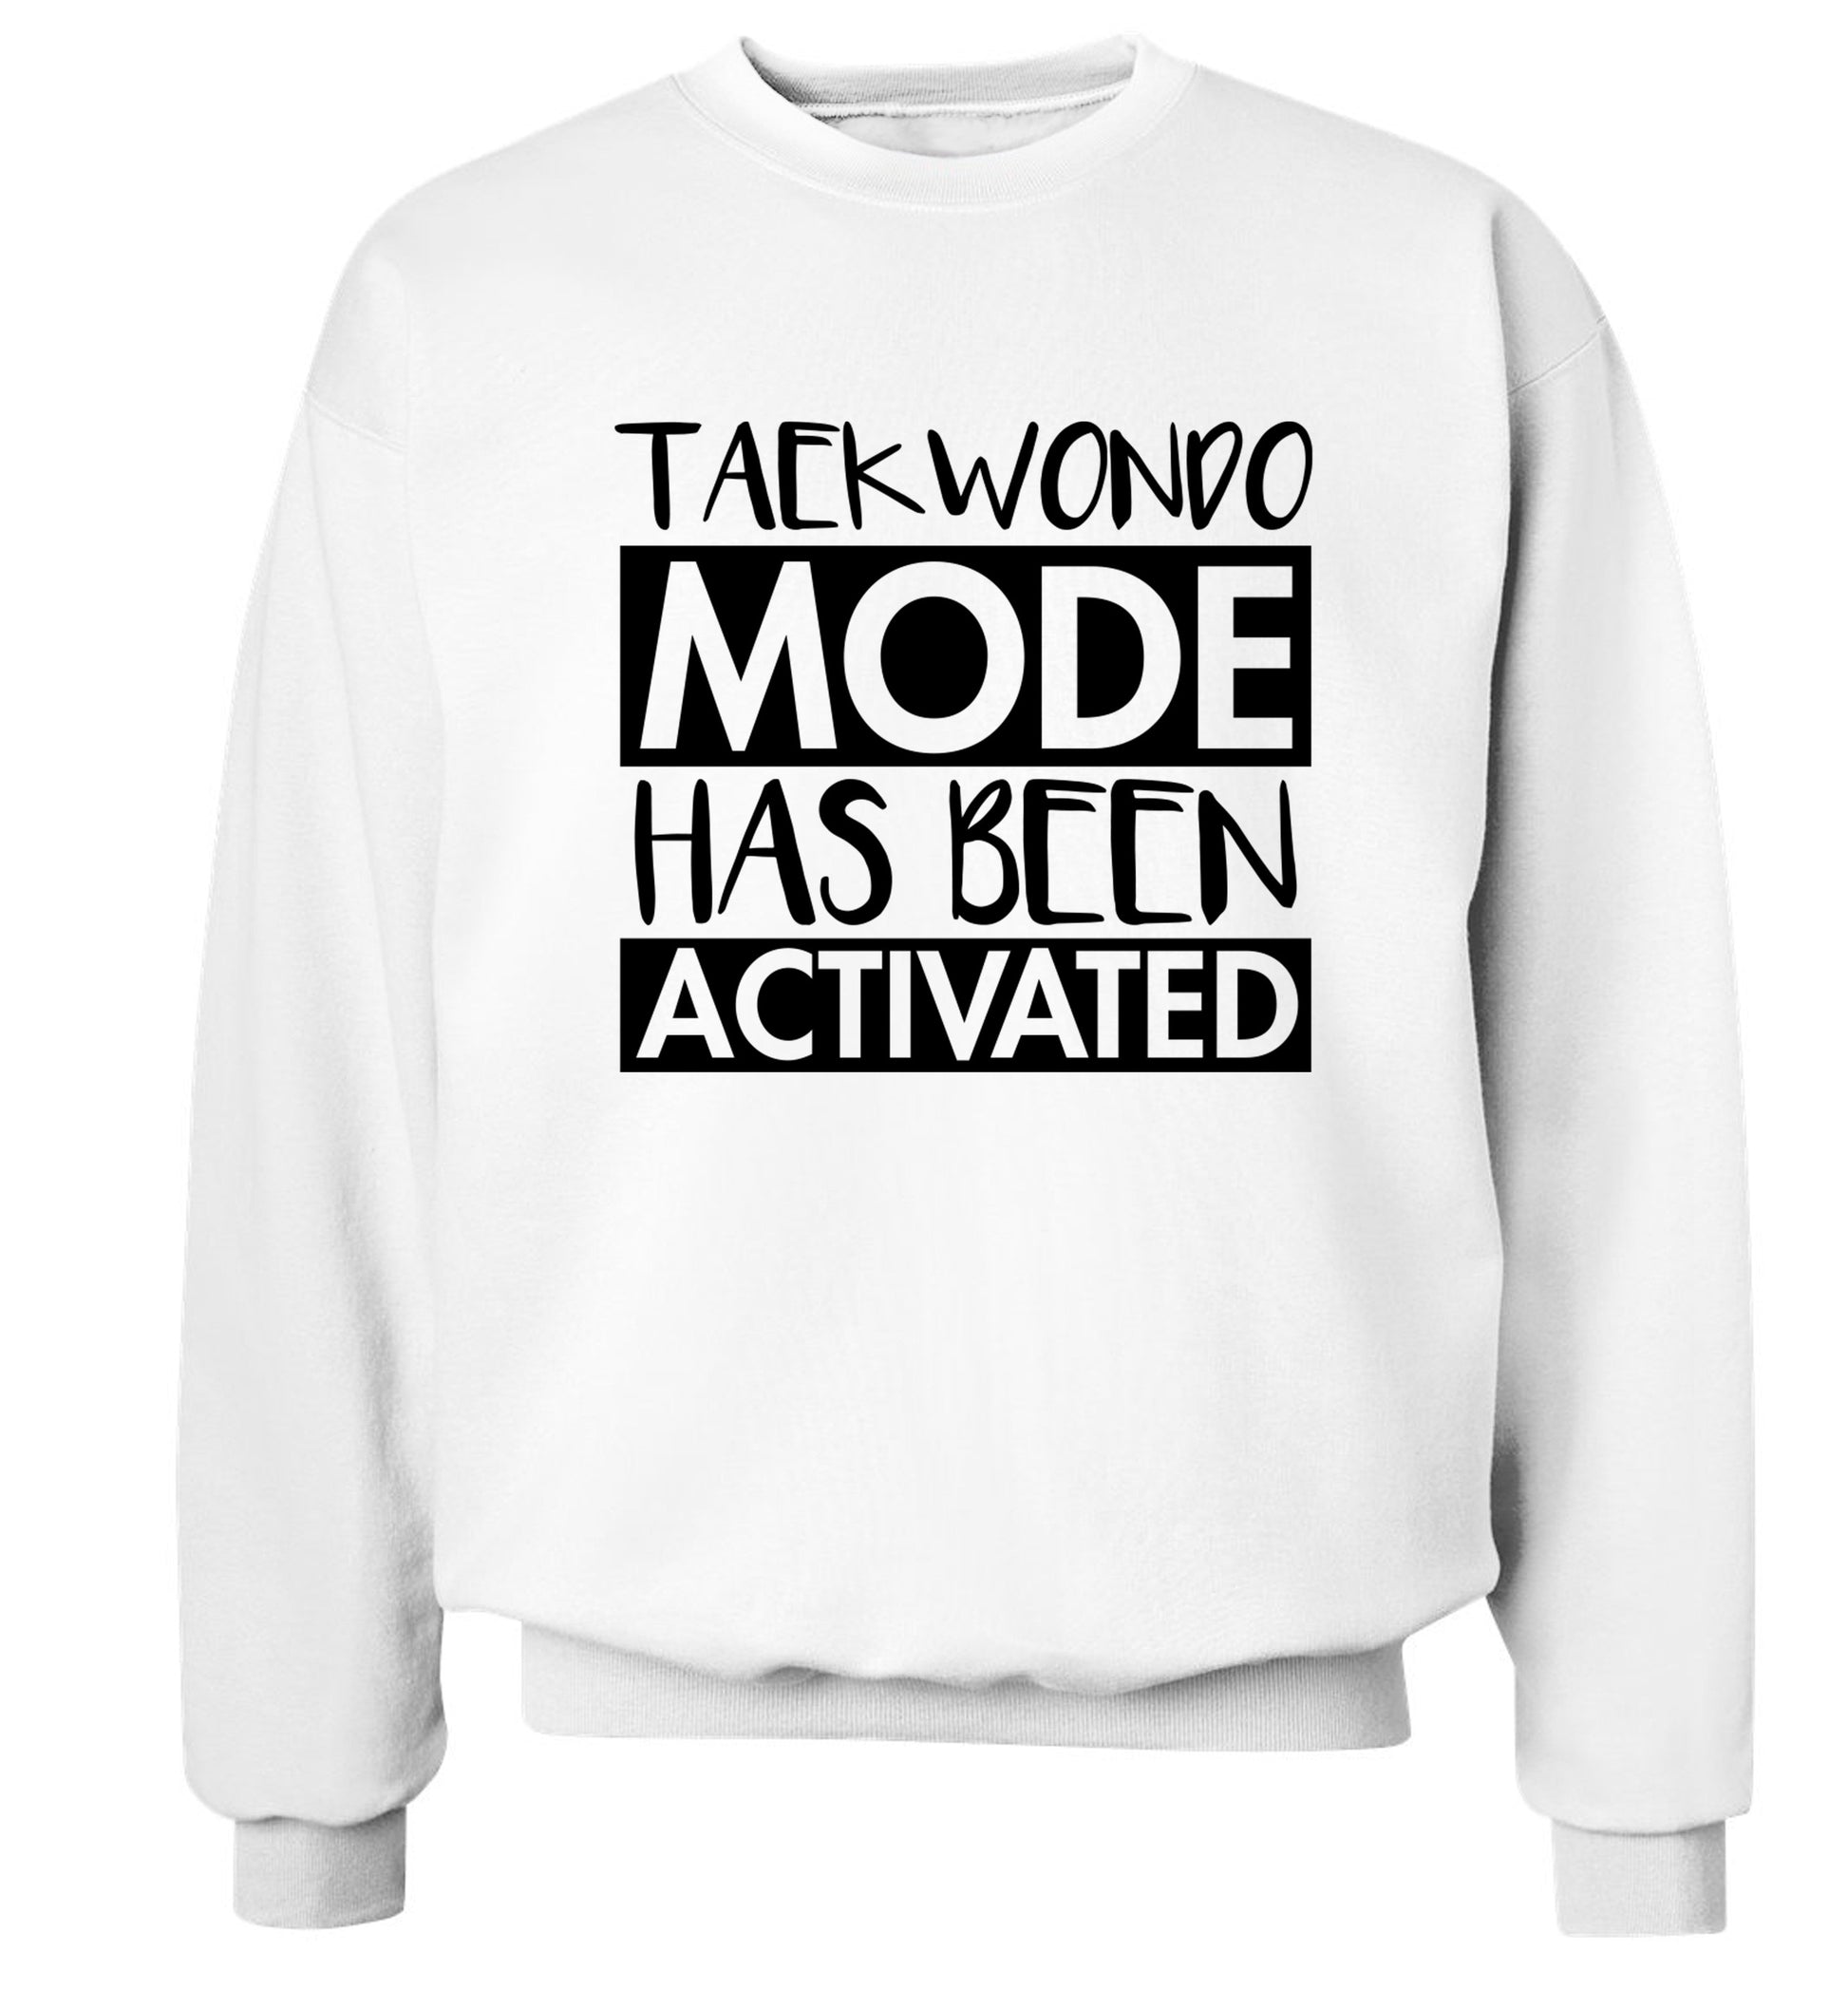 Taekwondo mode activated Adult's unisex white Sweater 2XL